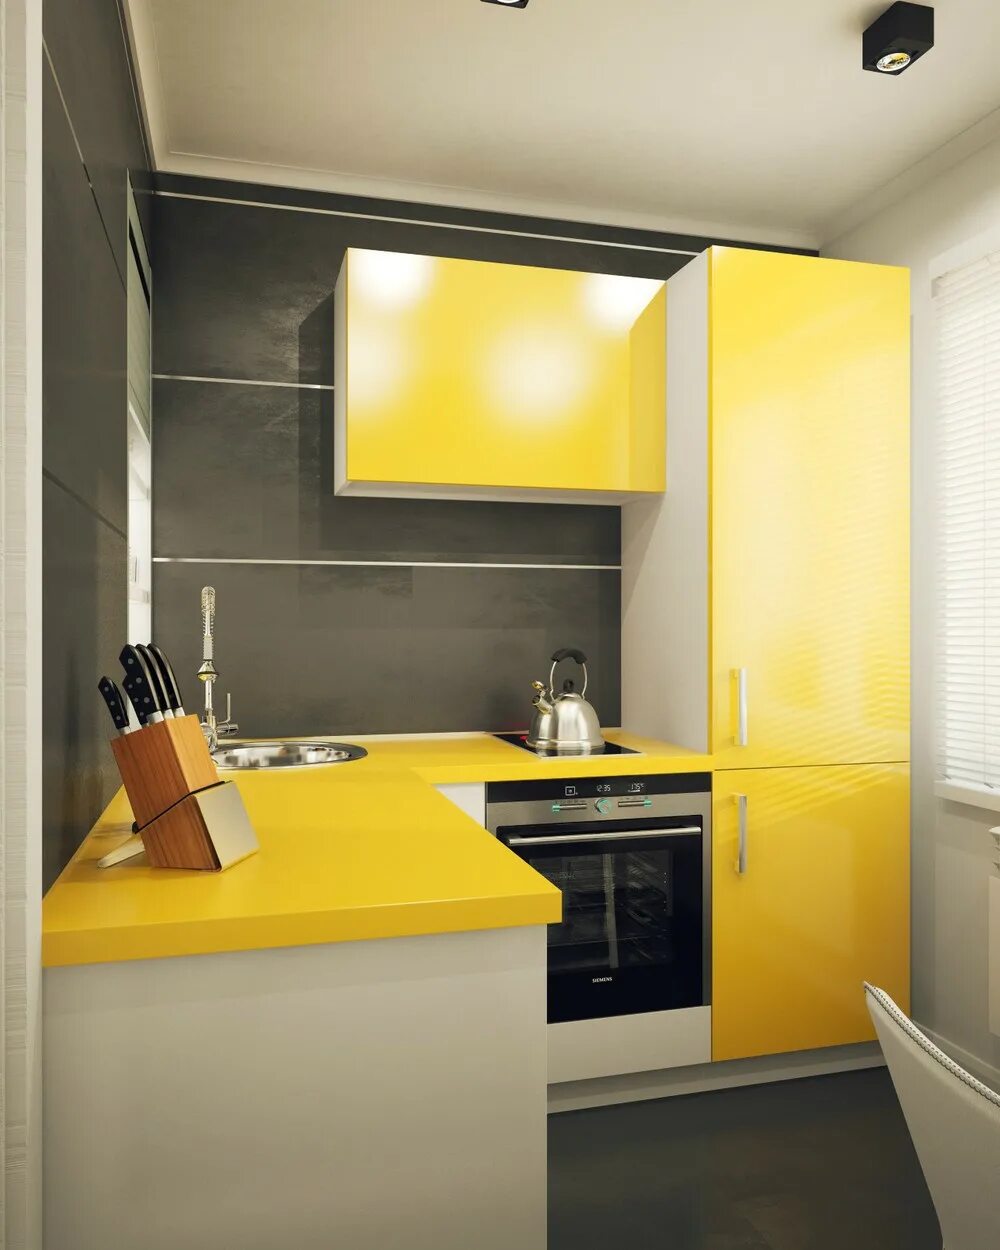 Интерьер кухни 5 м. Интерьер маленькой кухни. Желтый кухонный гарнитур. Планировка маленькой кухни. Кухня в желтом стиле.